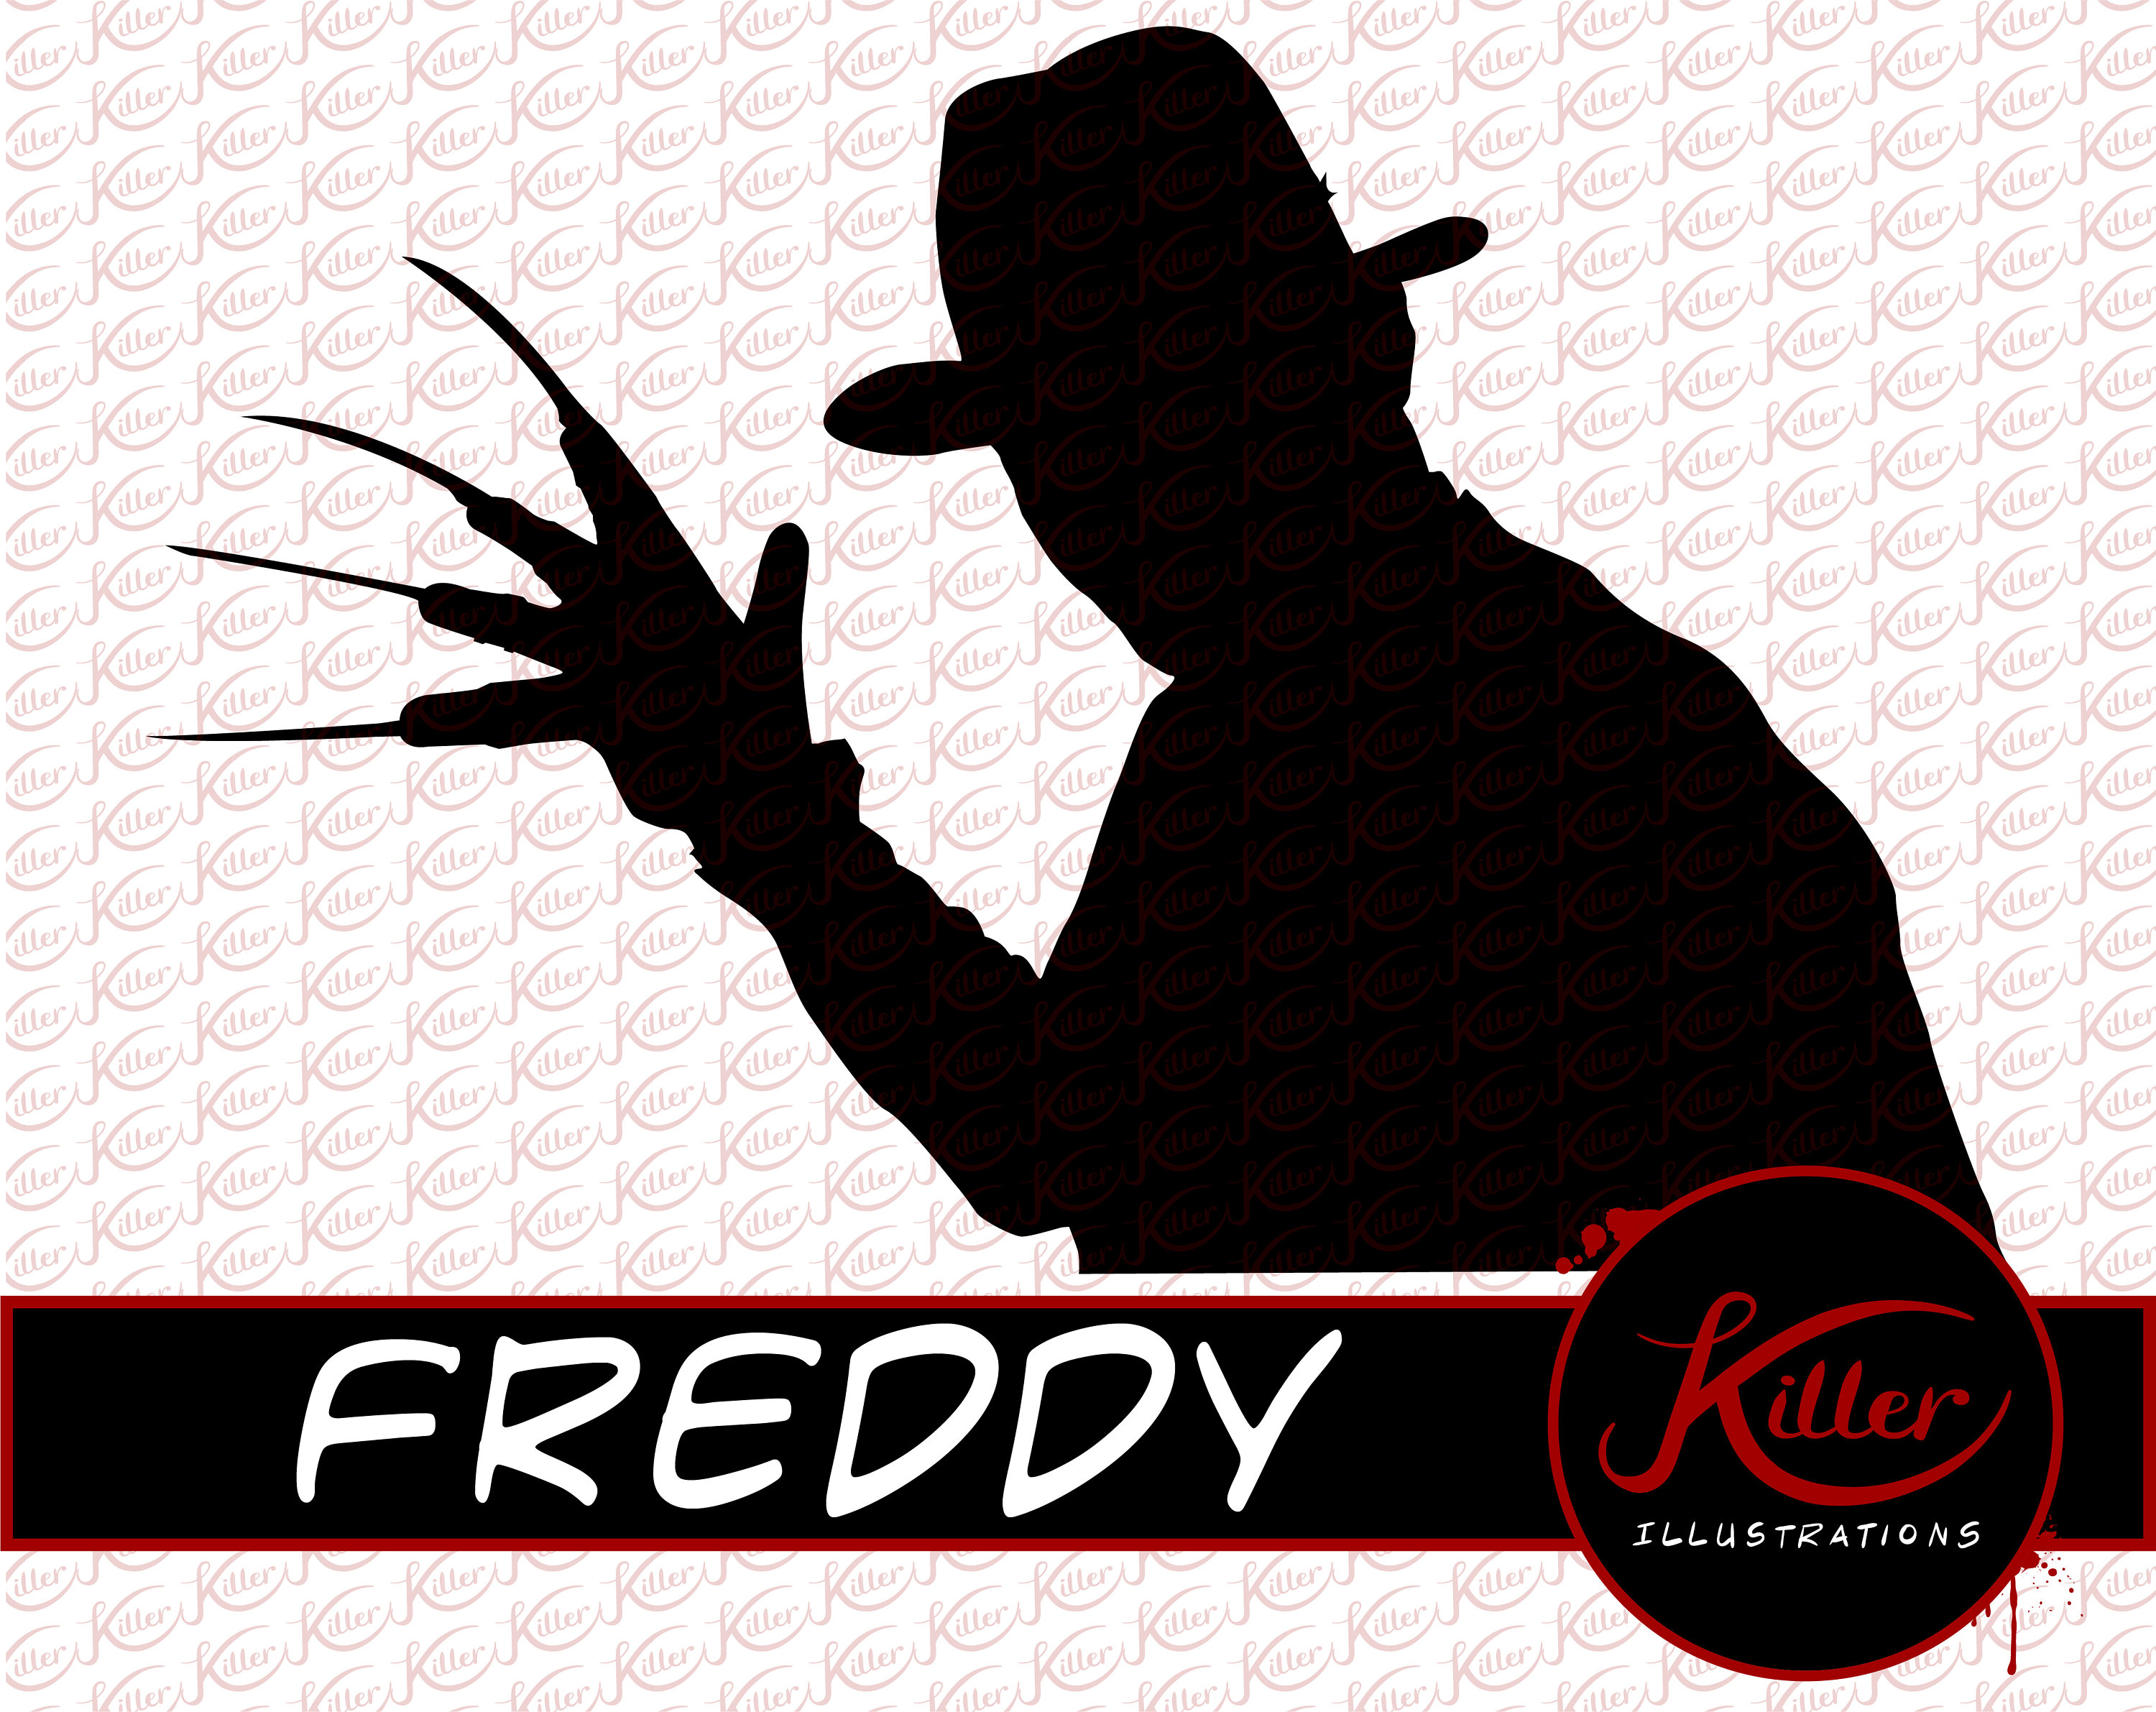 Vector Images for 'Freddy krueger'. 